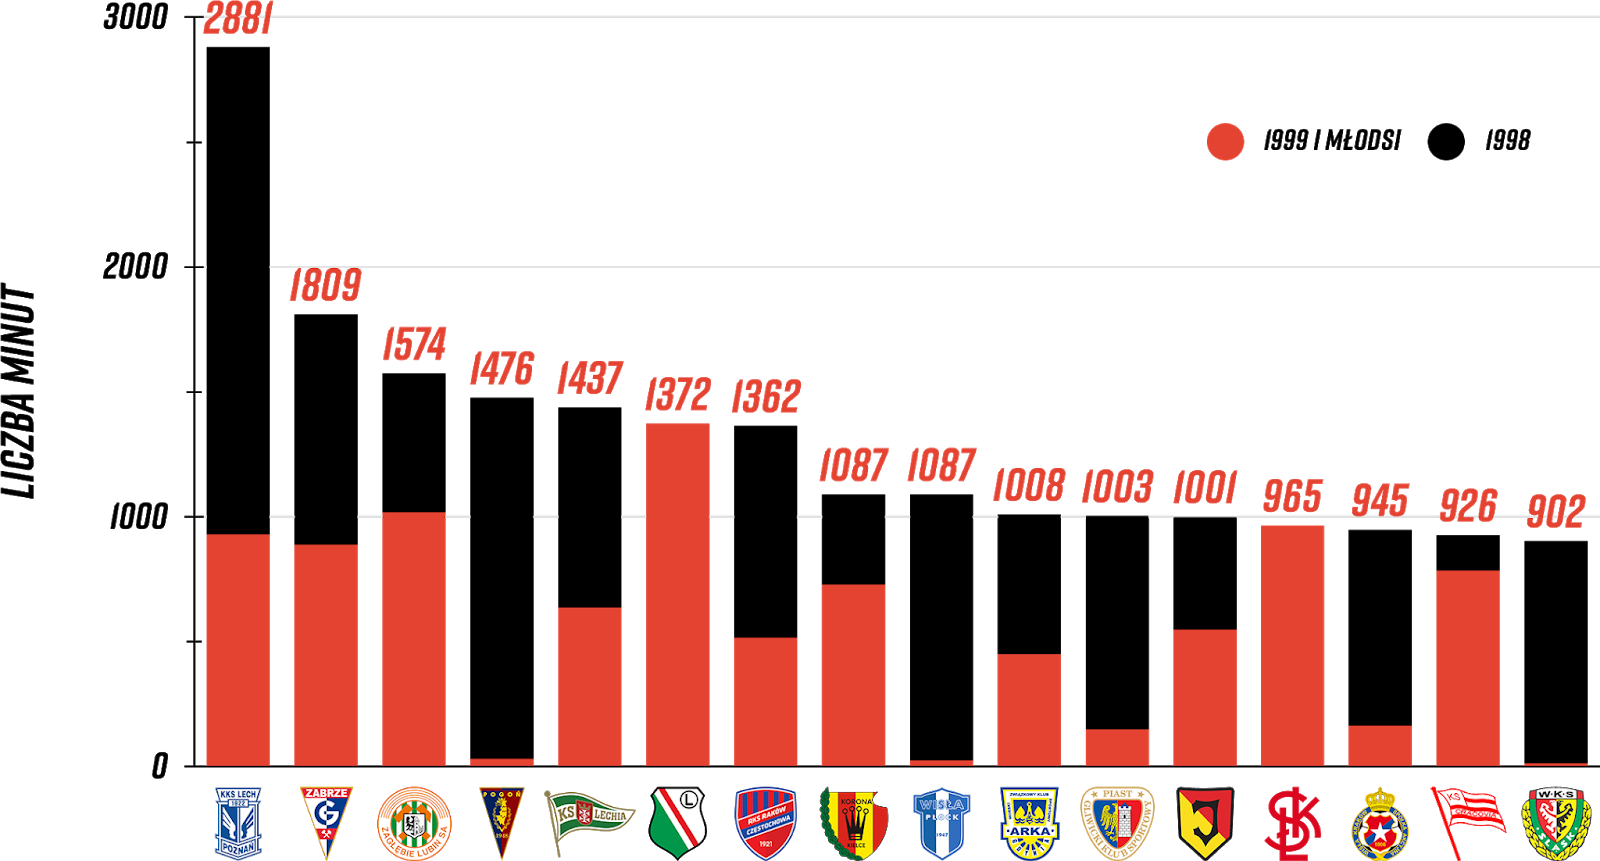 Klasyfikacja klubów pod względem rozegranych minut przez młodzieżowców po 10 kolejkach PKO Ekstraklasy<br><br>Źródło: Opracowanie własne na podstawie ekstrastats.pl<br><br>graf. Bartosz Urban